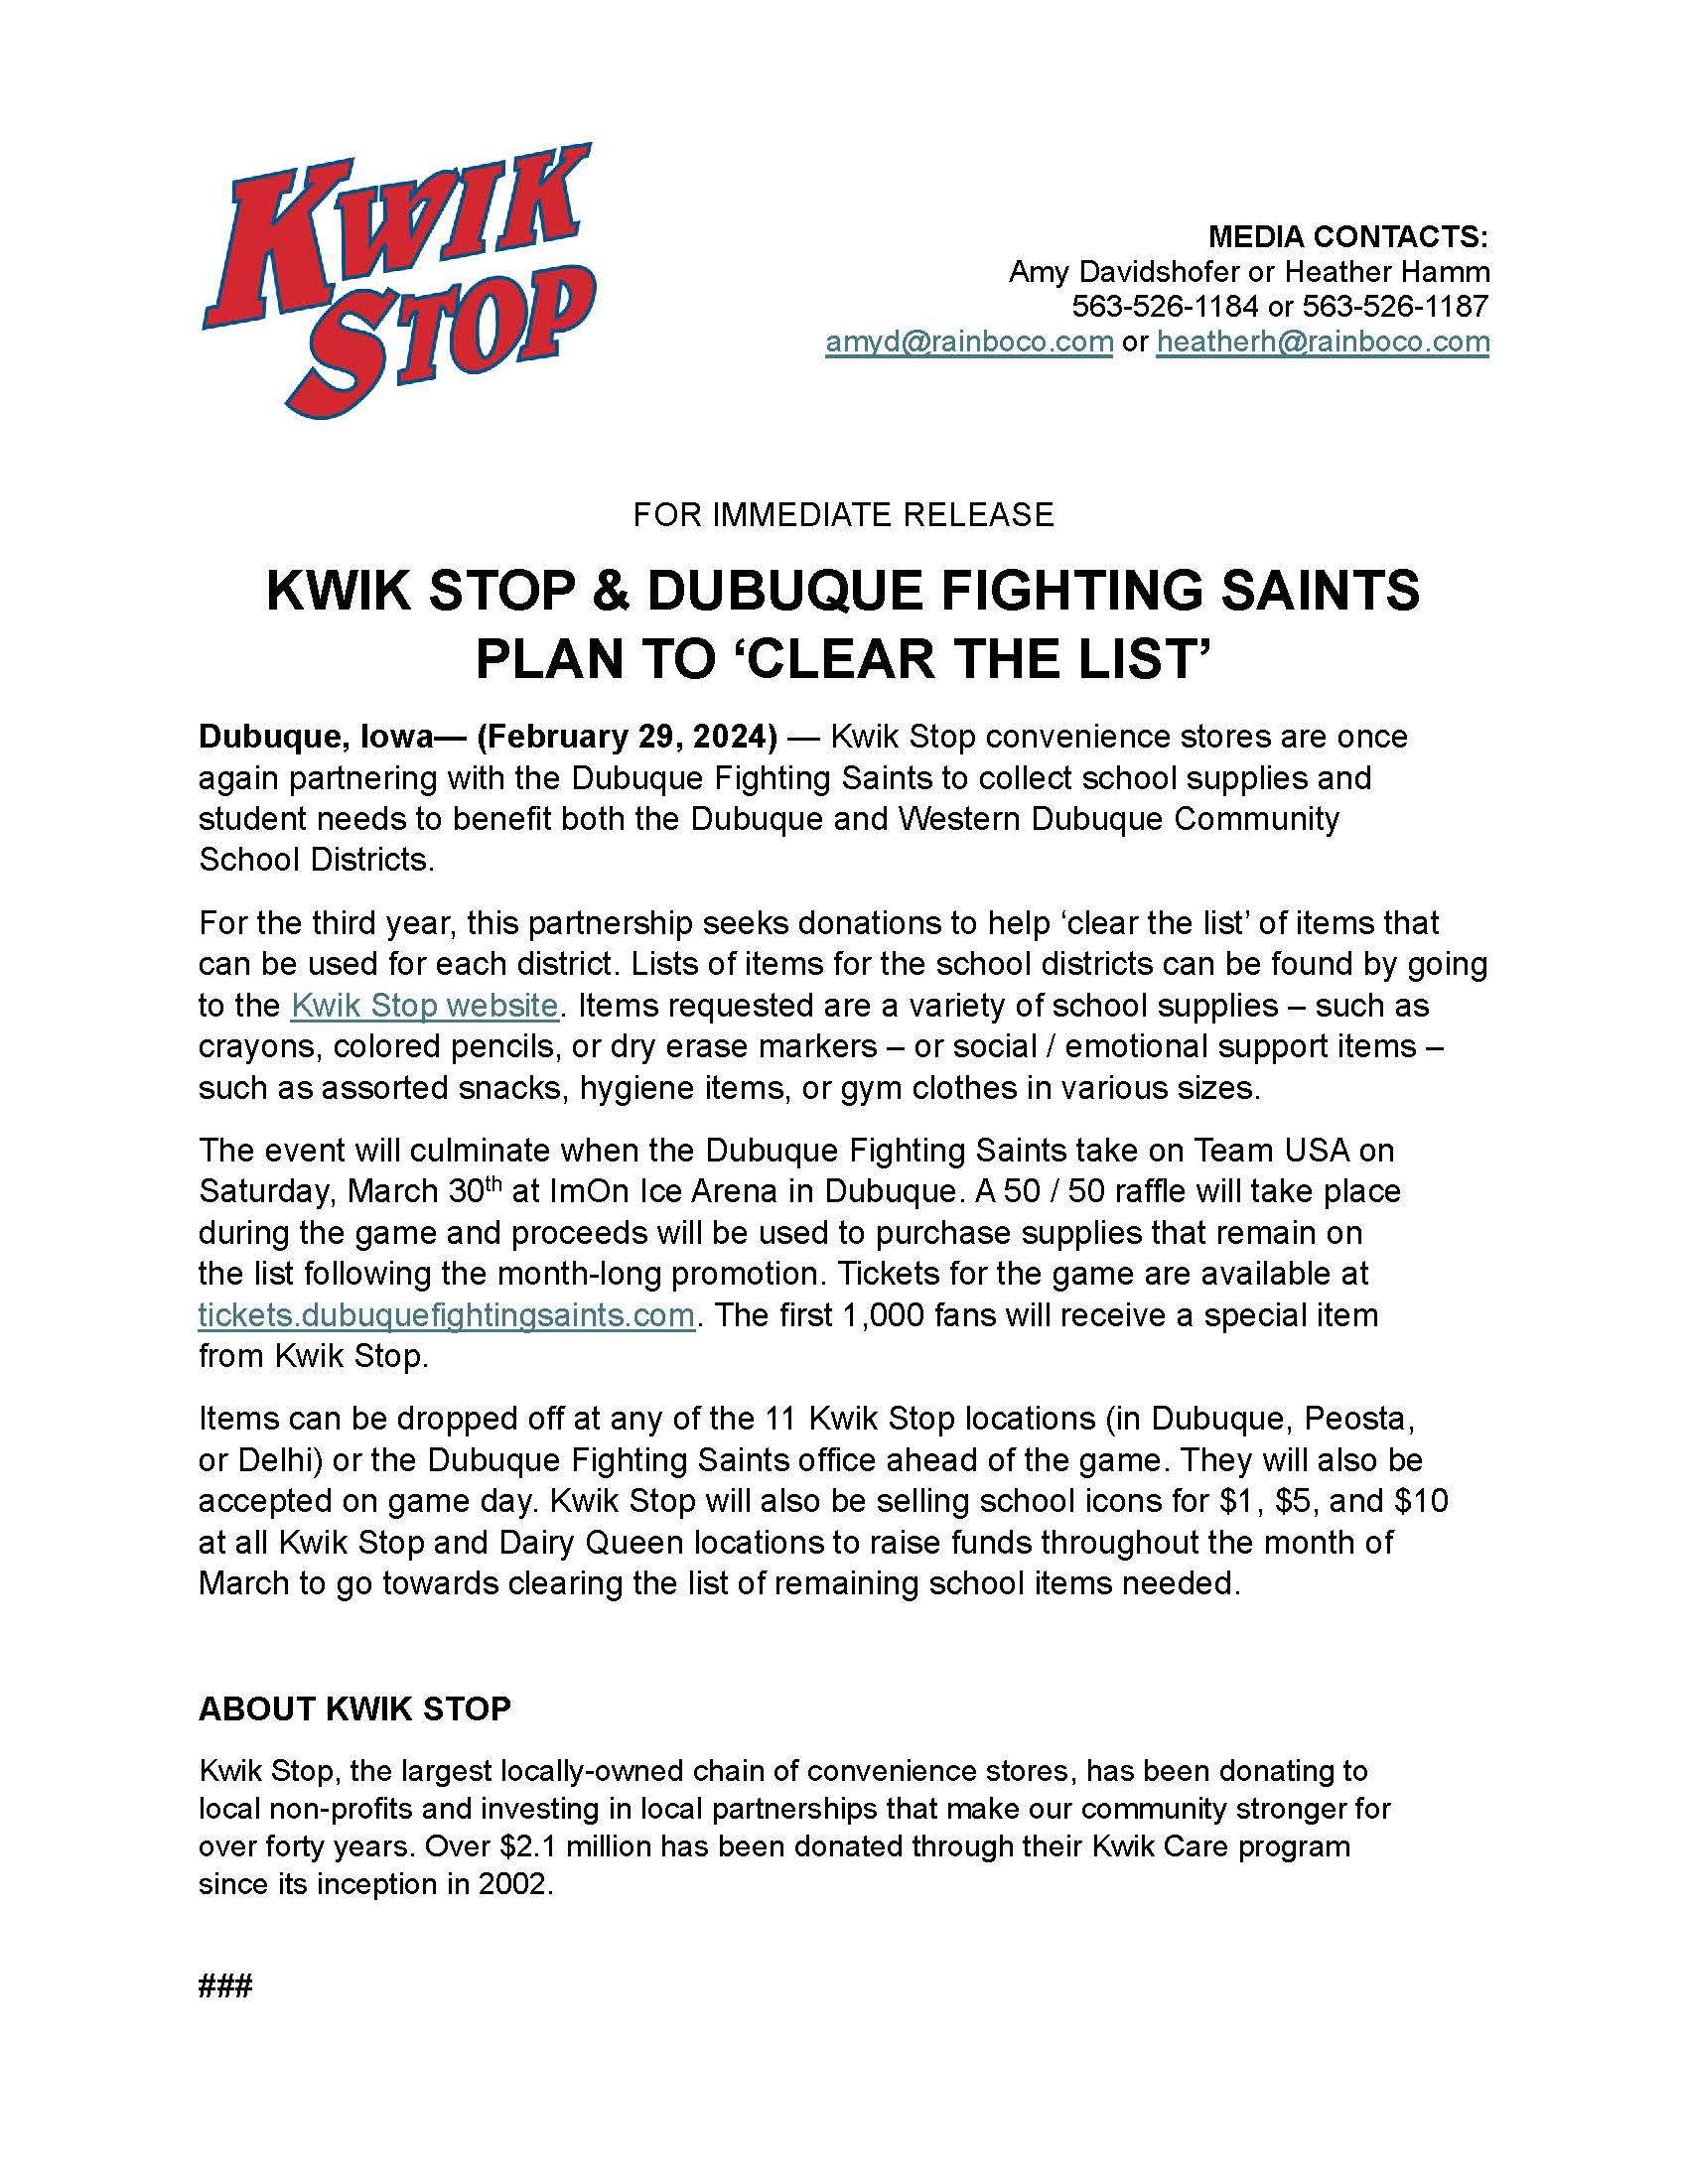 Kwik Stop Clear The List Press Release